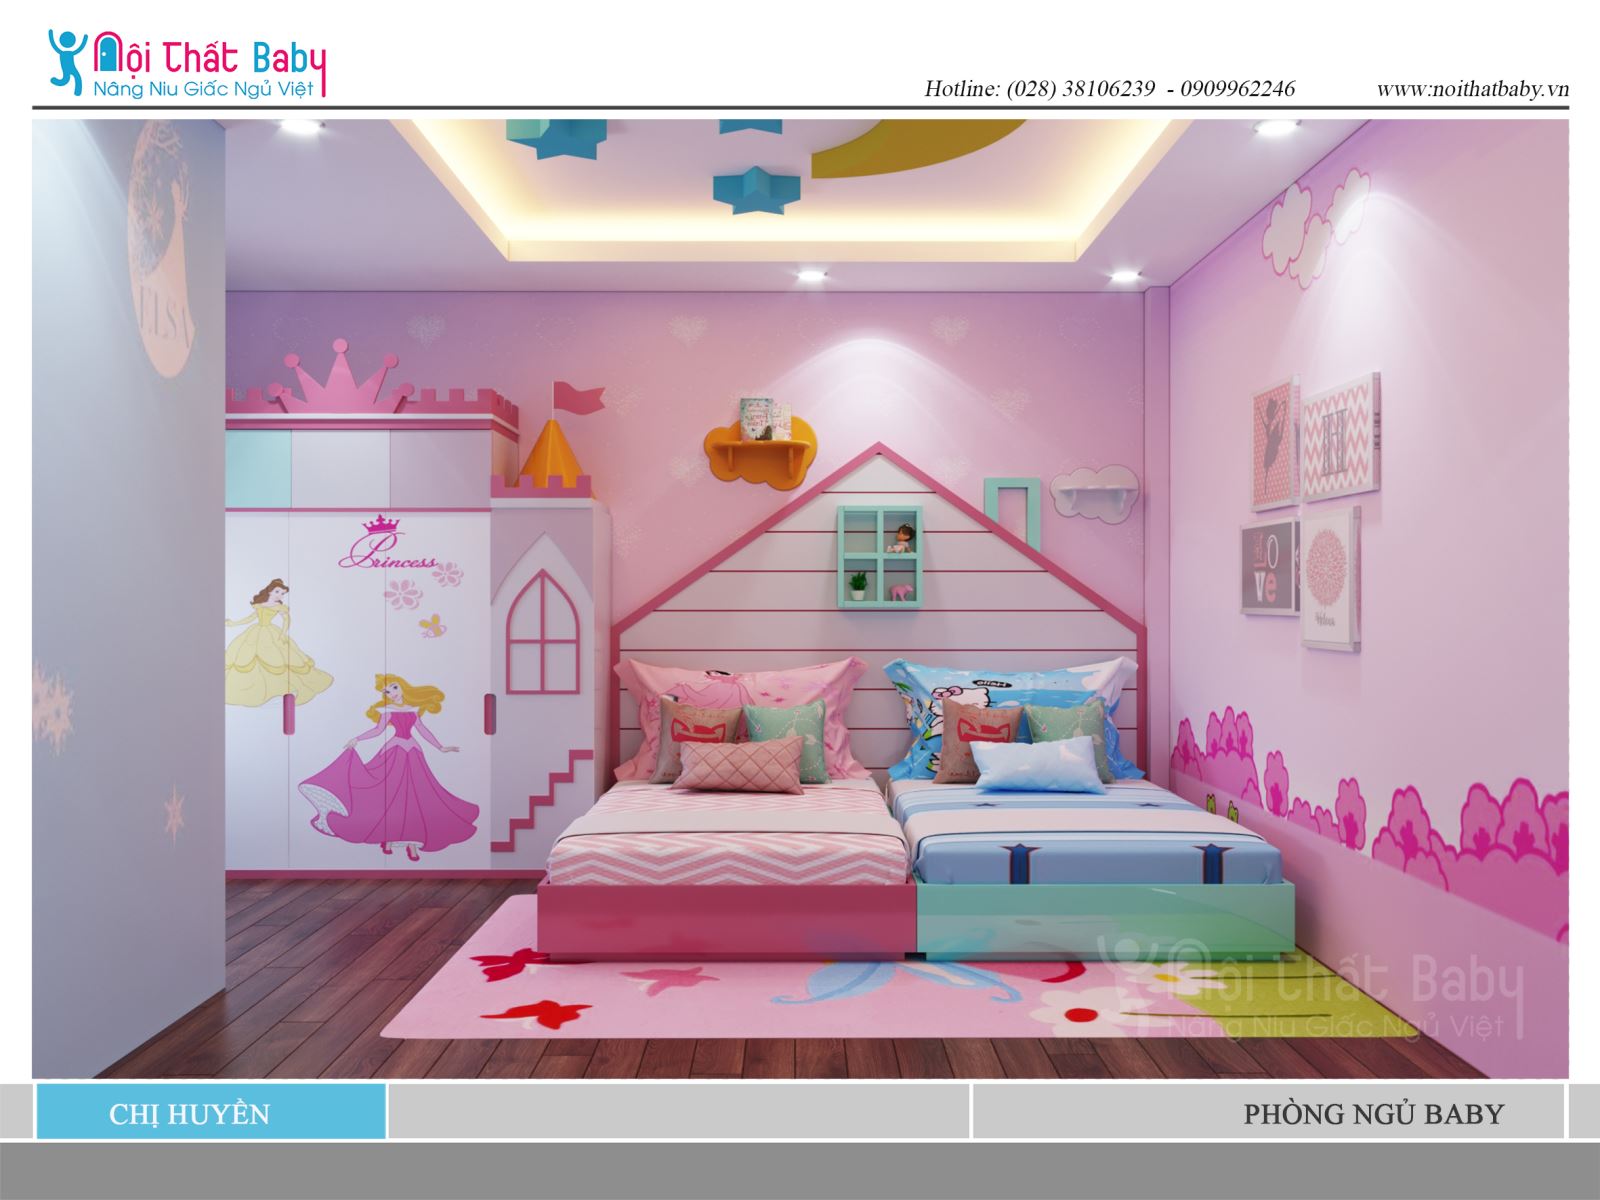 Được thiết kế với gam màu hồng đáng yêu, giường ngủ sẽ là trung tâm của phòng ngủ của bạn. Hãy xem ngay hình ảnh giường ngủ màu hồng này để tìm kiếm sự lựa chọn hoàn hảo cho căn phòng của bạn. Với chất liệu cao cấp và thiết kế đẹp mắt, giường ngủ màu hồng đáng yêu sẽ là điểm nhấn cho không gian sống của bạn.